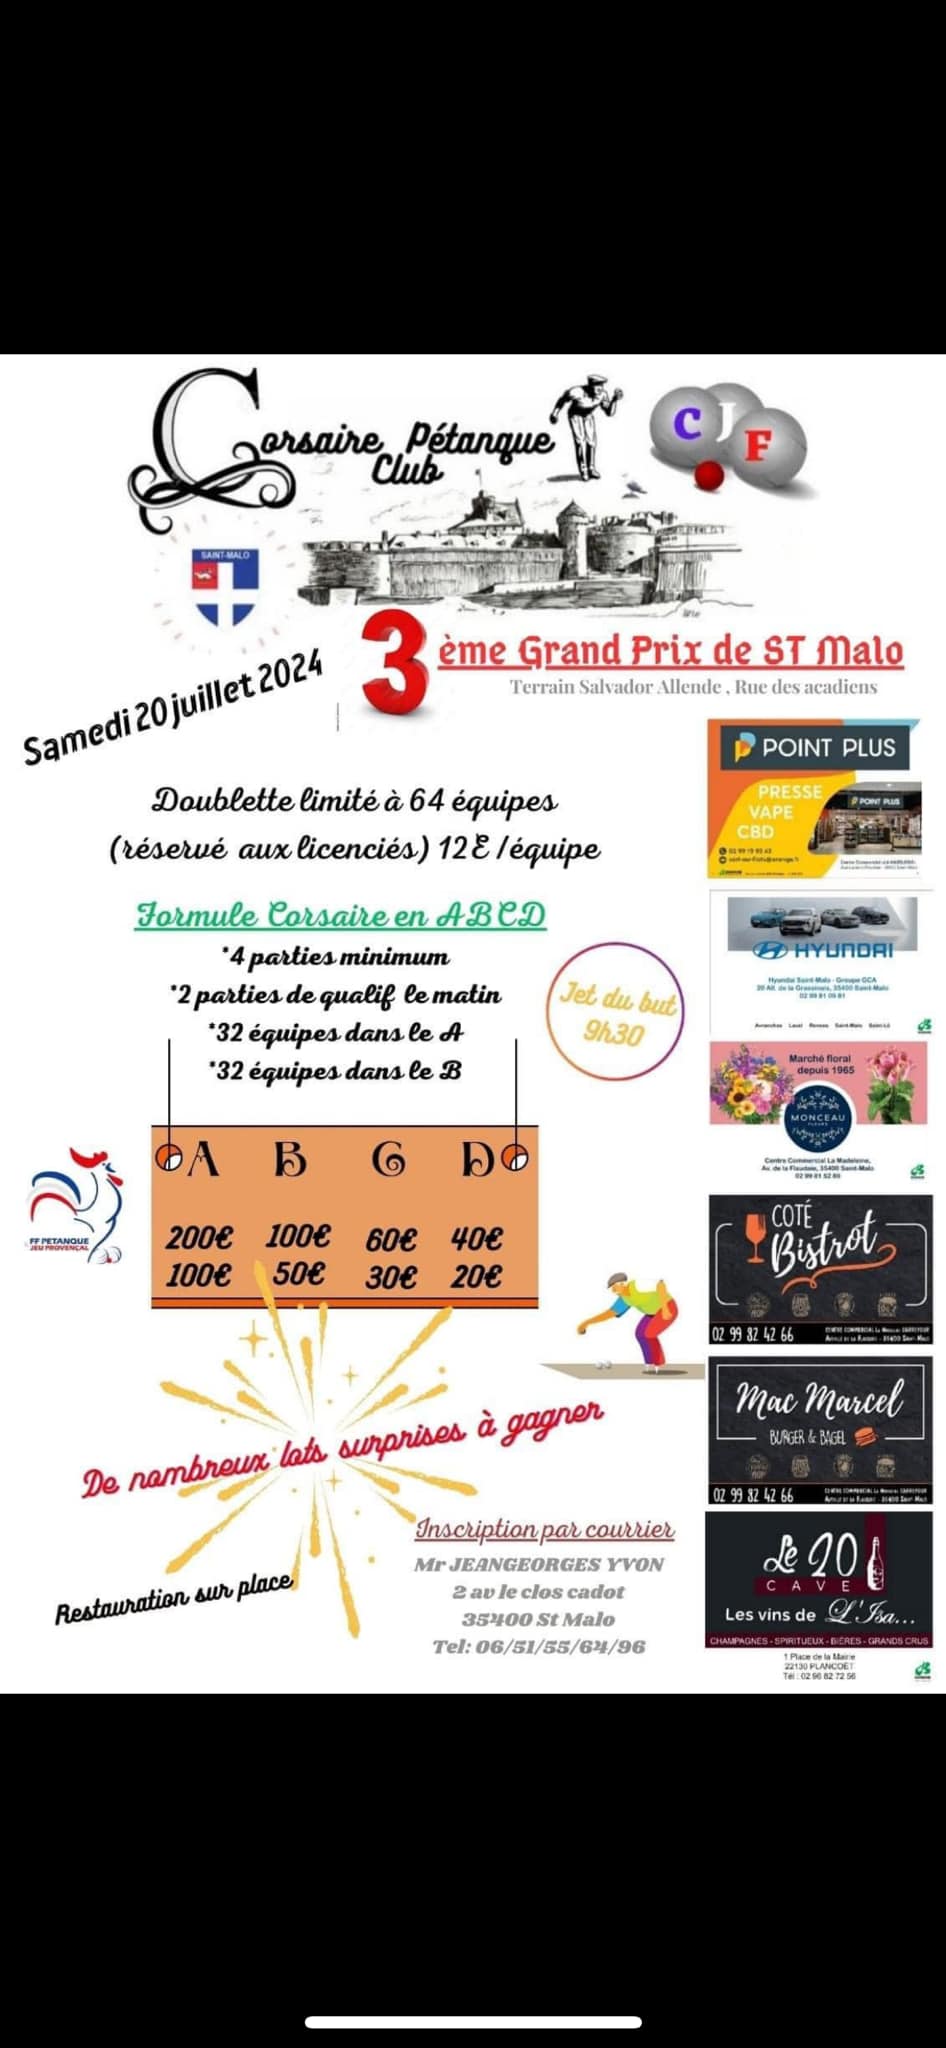 Concours de pétanque Officiel - Saint-Malo